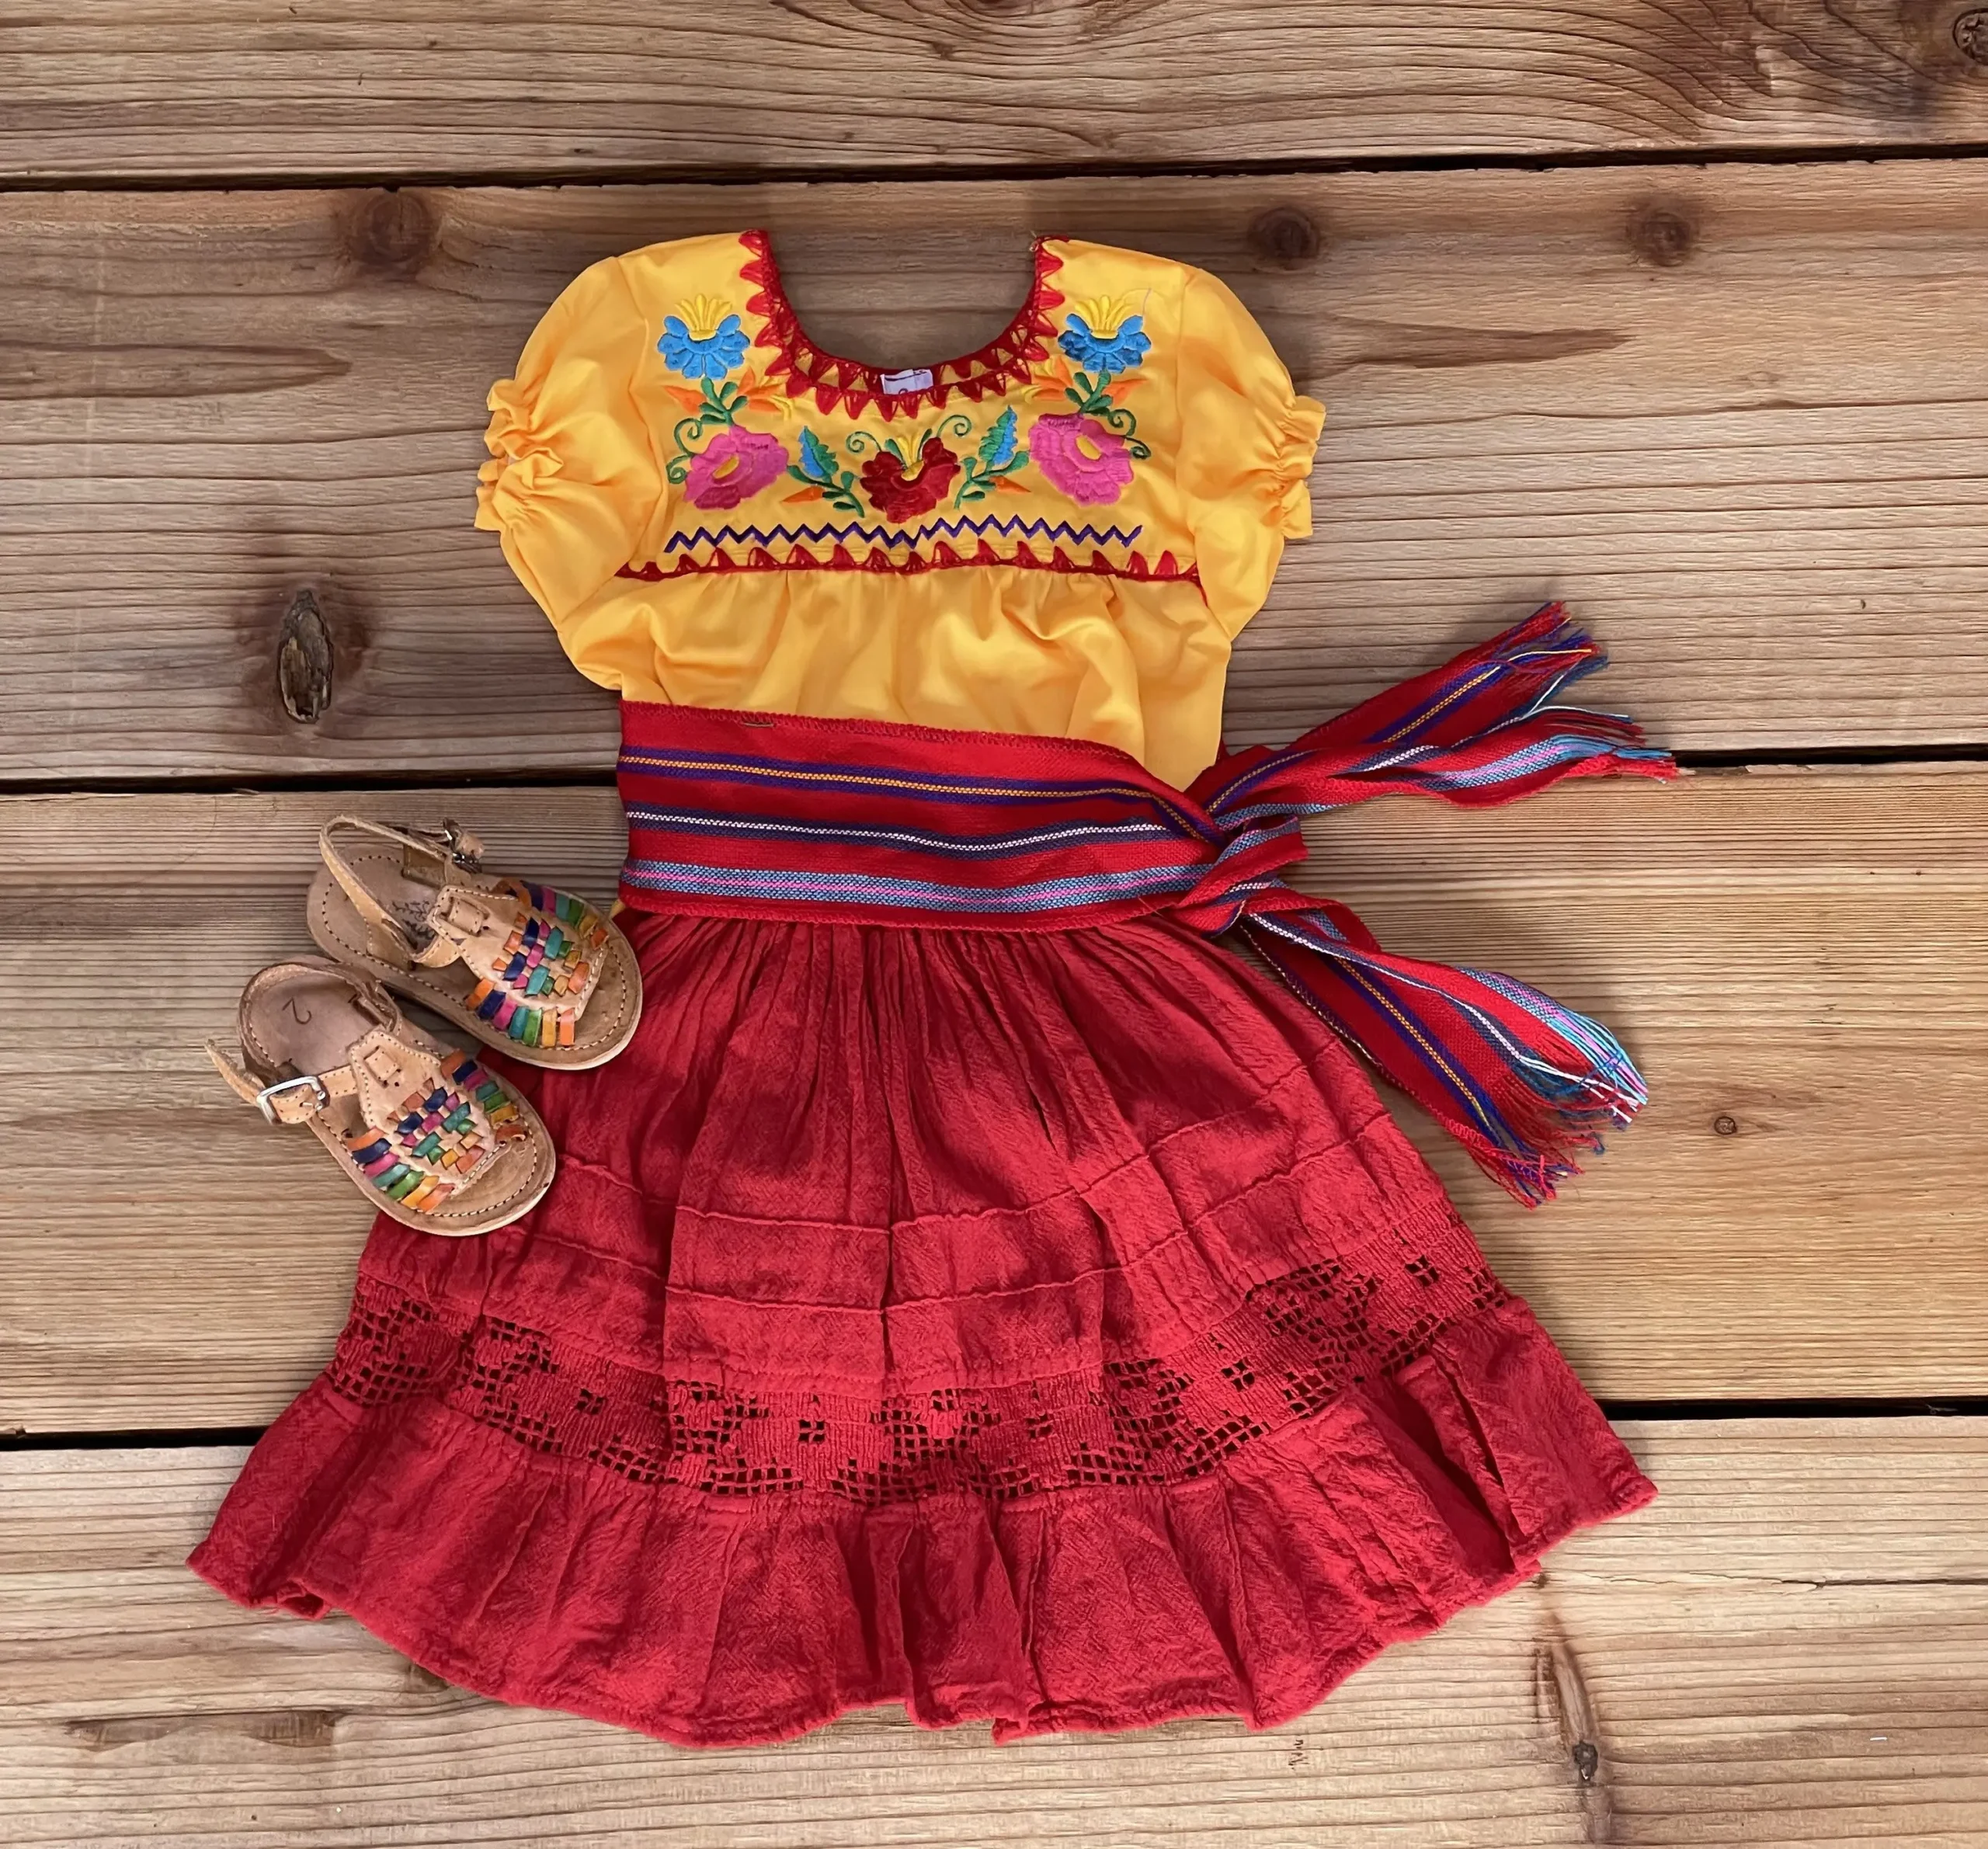 niñas vestidas de frida kahlo - Cuál era la enfermedad de Frida